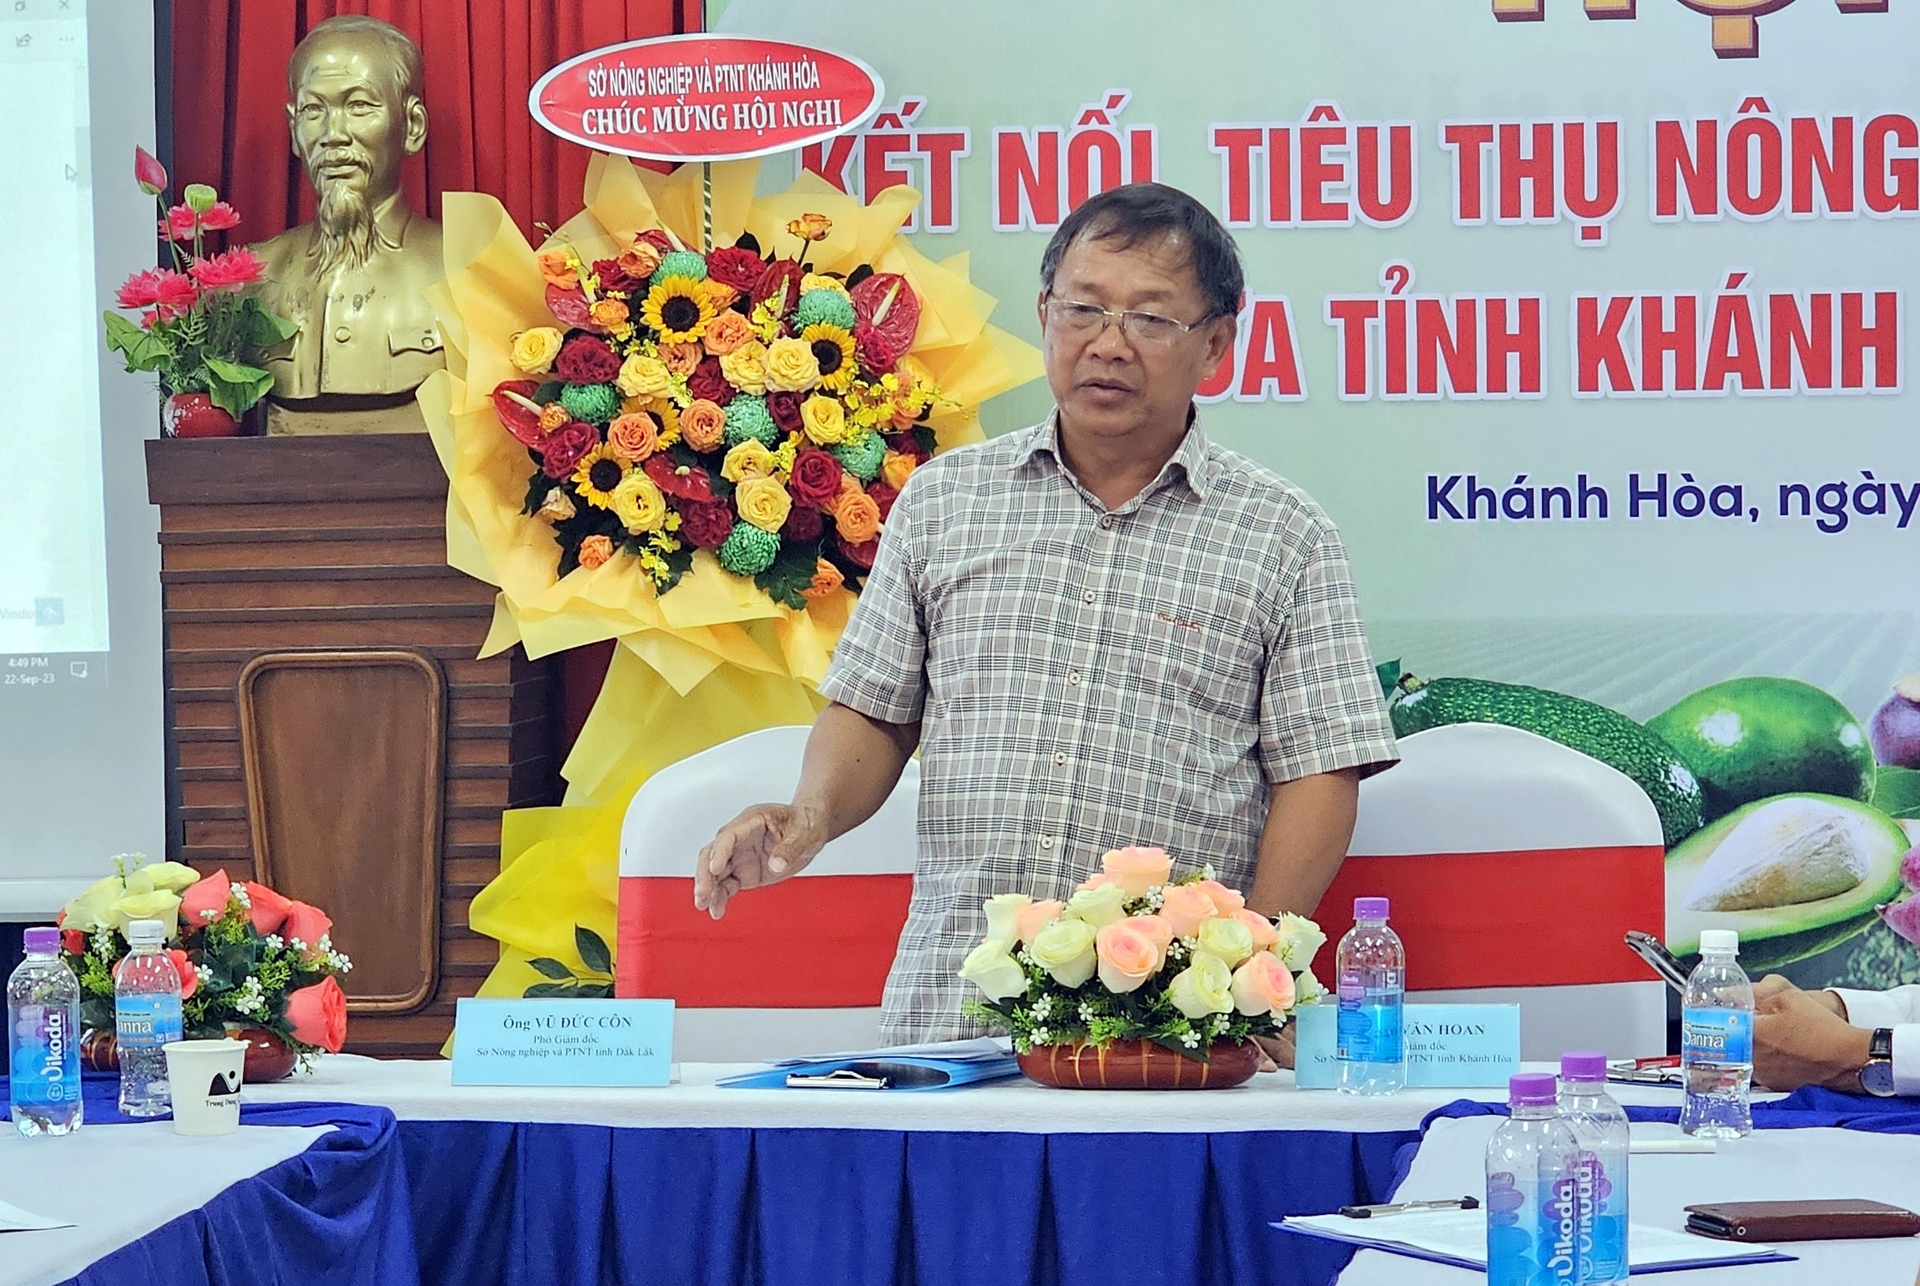 Ông Vũ Đức Côn, Phó Giám đốc Sở NN-PTNT Đắk Lắk cho rằng, nếu không tìm đường để nông sản đi xa hơn thì nông nghiệp khó phát triển được. Ảnh: KS.